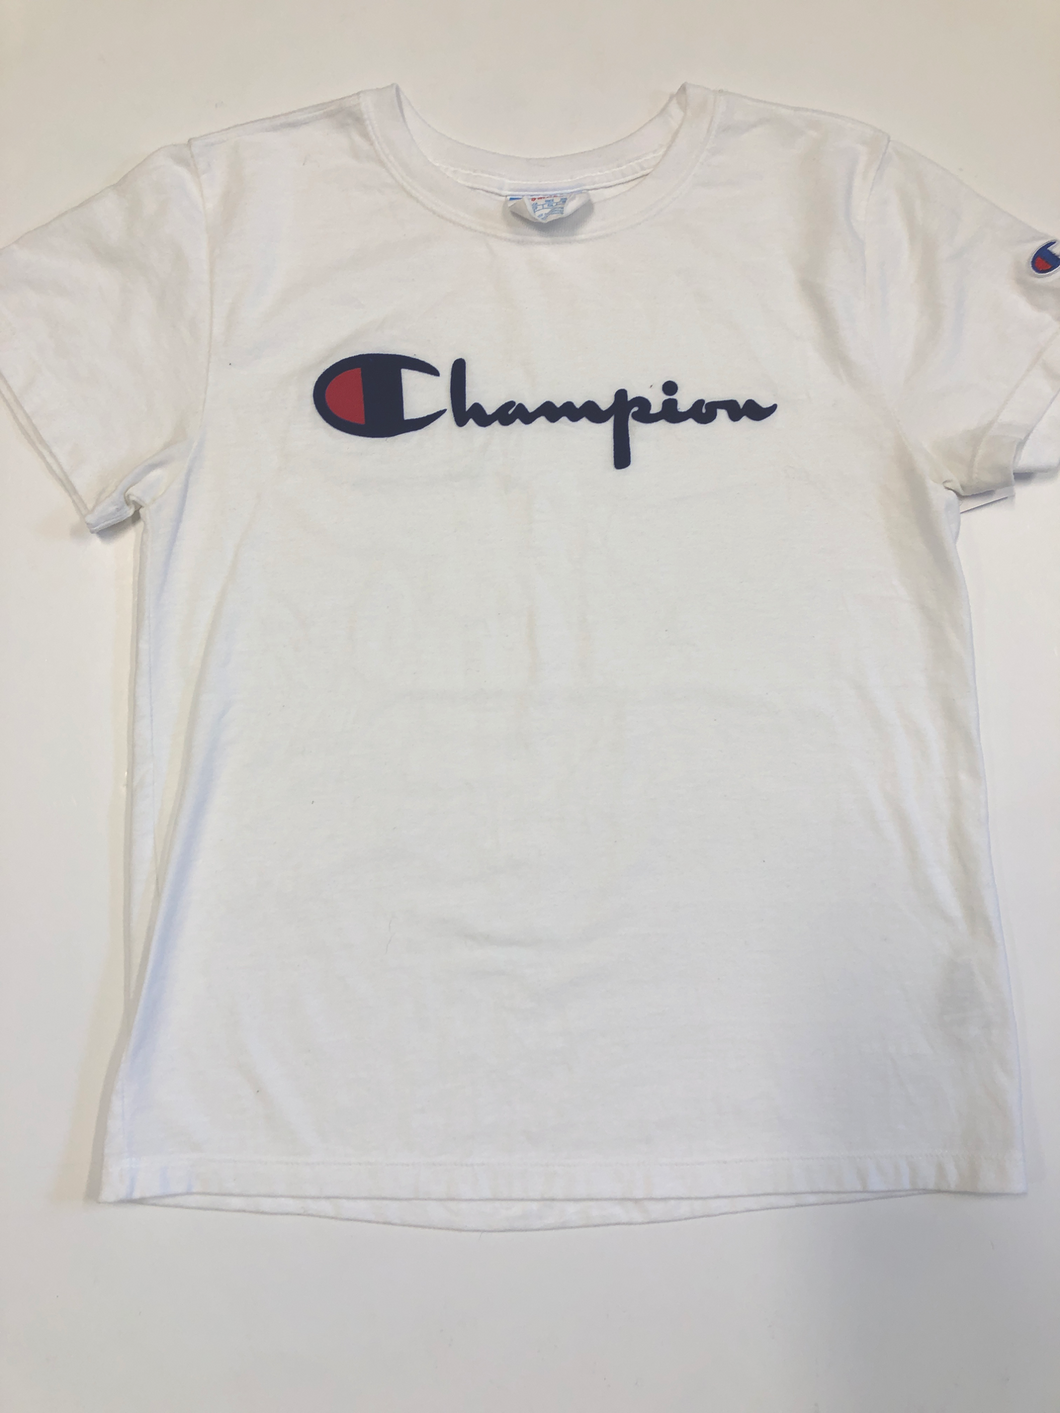 Champion T-Shirt Size Small